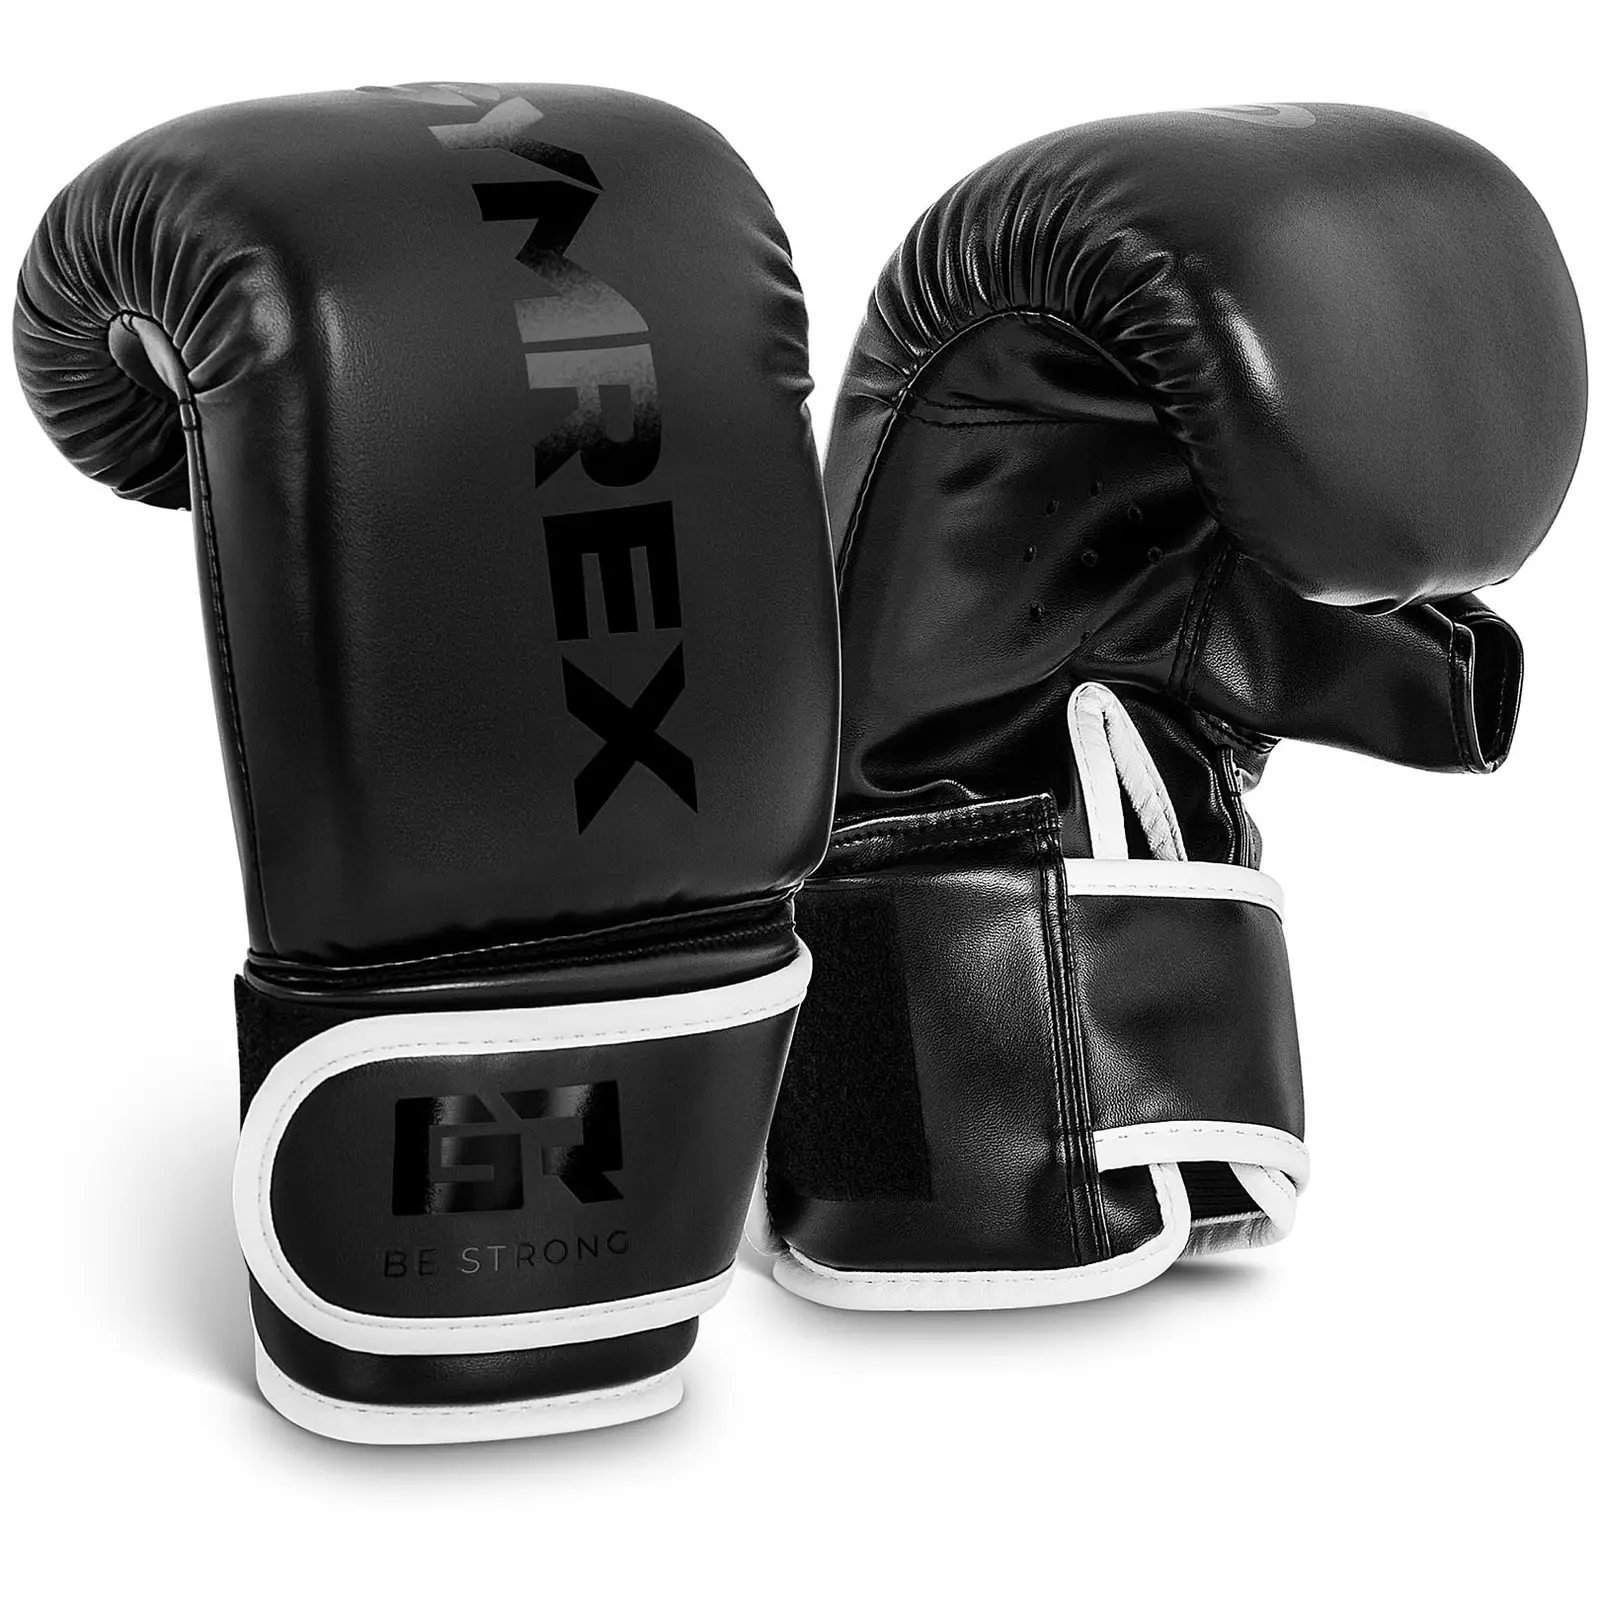 Bokszkesztyű bokszzsákhoz - 10 oz - fekete | Gymrex